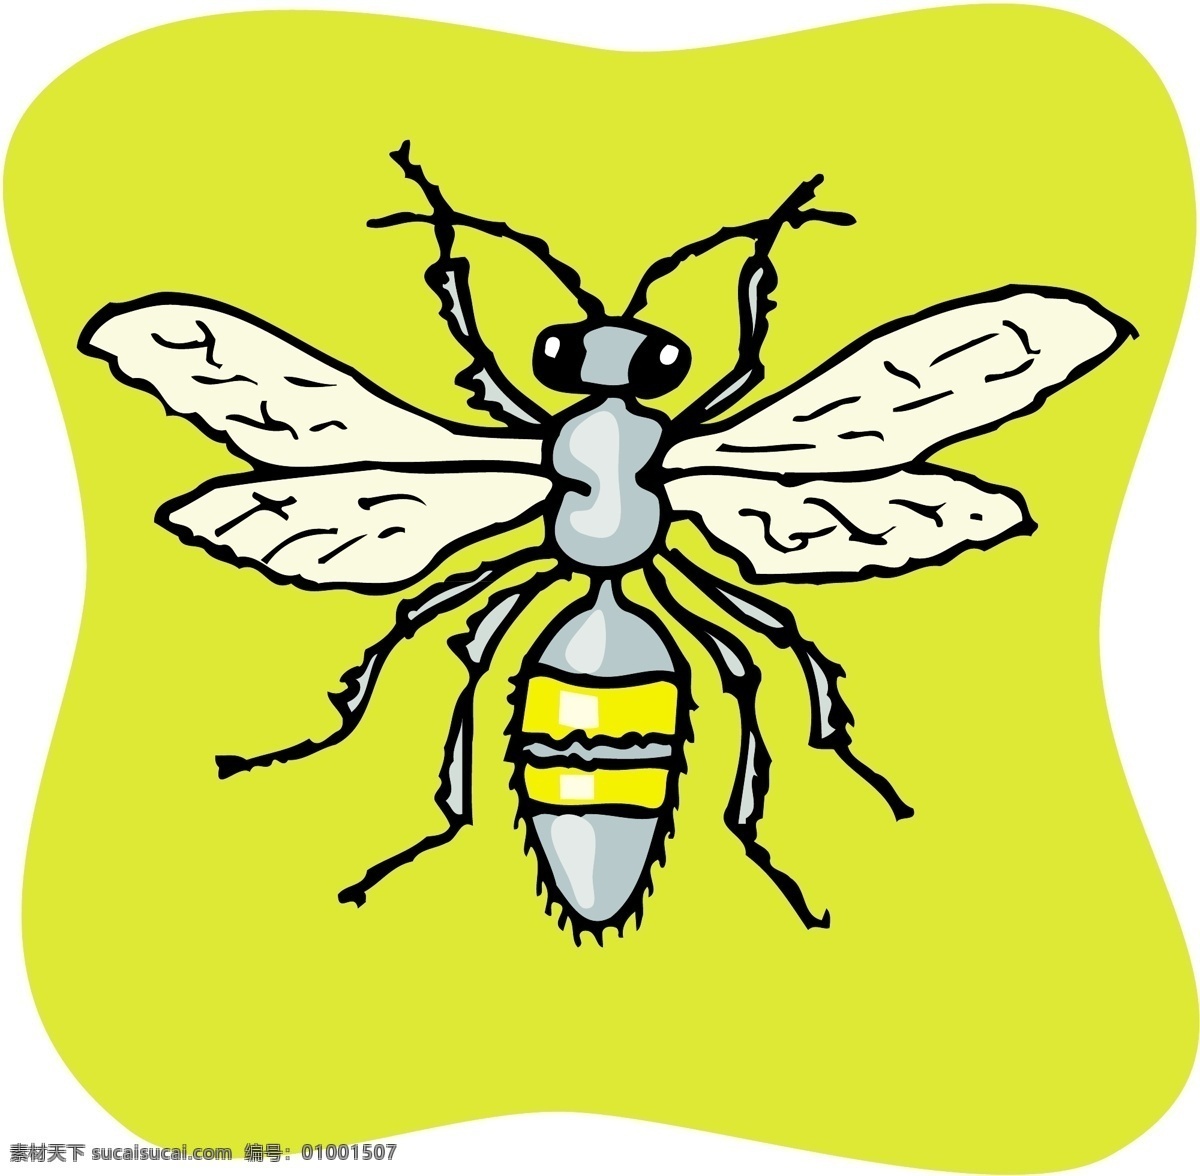 甲虫 昆虫 矢量素材 格式 eps格式 设计素材 昆虫世界 矢量动物 矢量图库 黄色